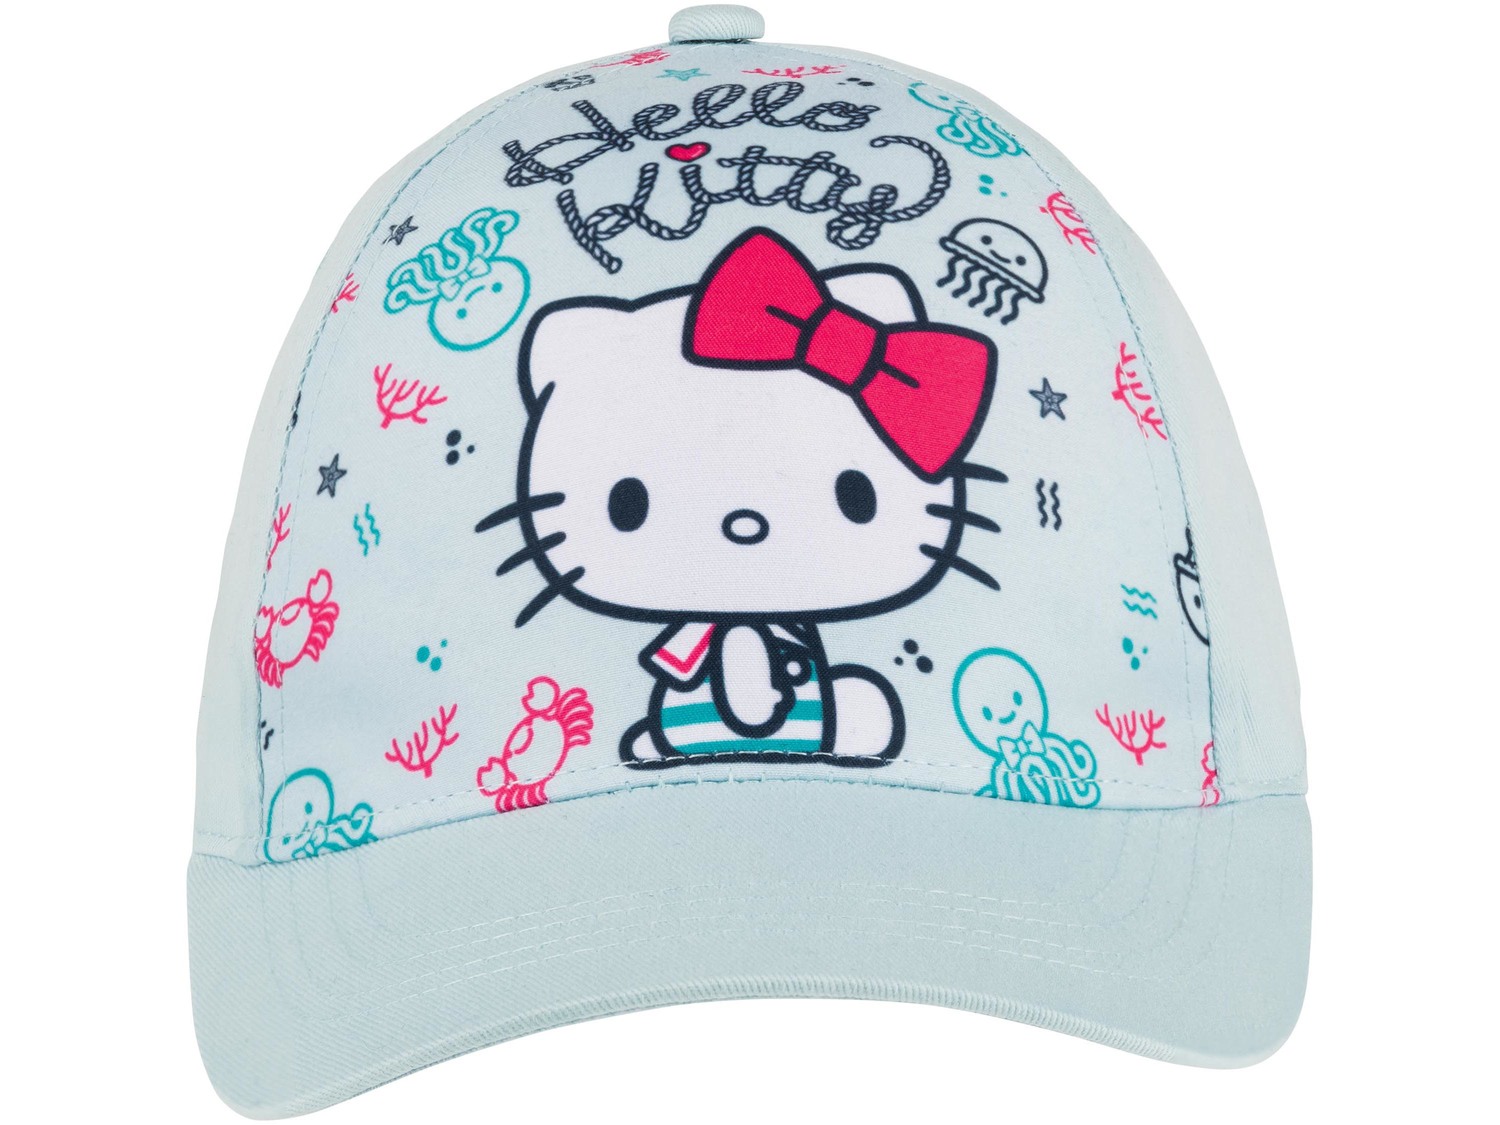 Cappello per bambini , prezzo 3.99 &#8364;  
Misure: S-M
- Oeko tex NEW